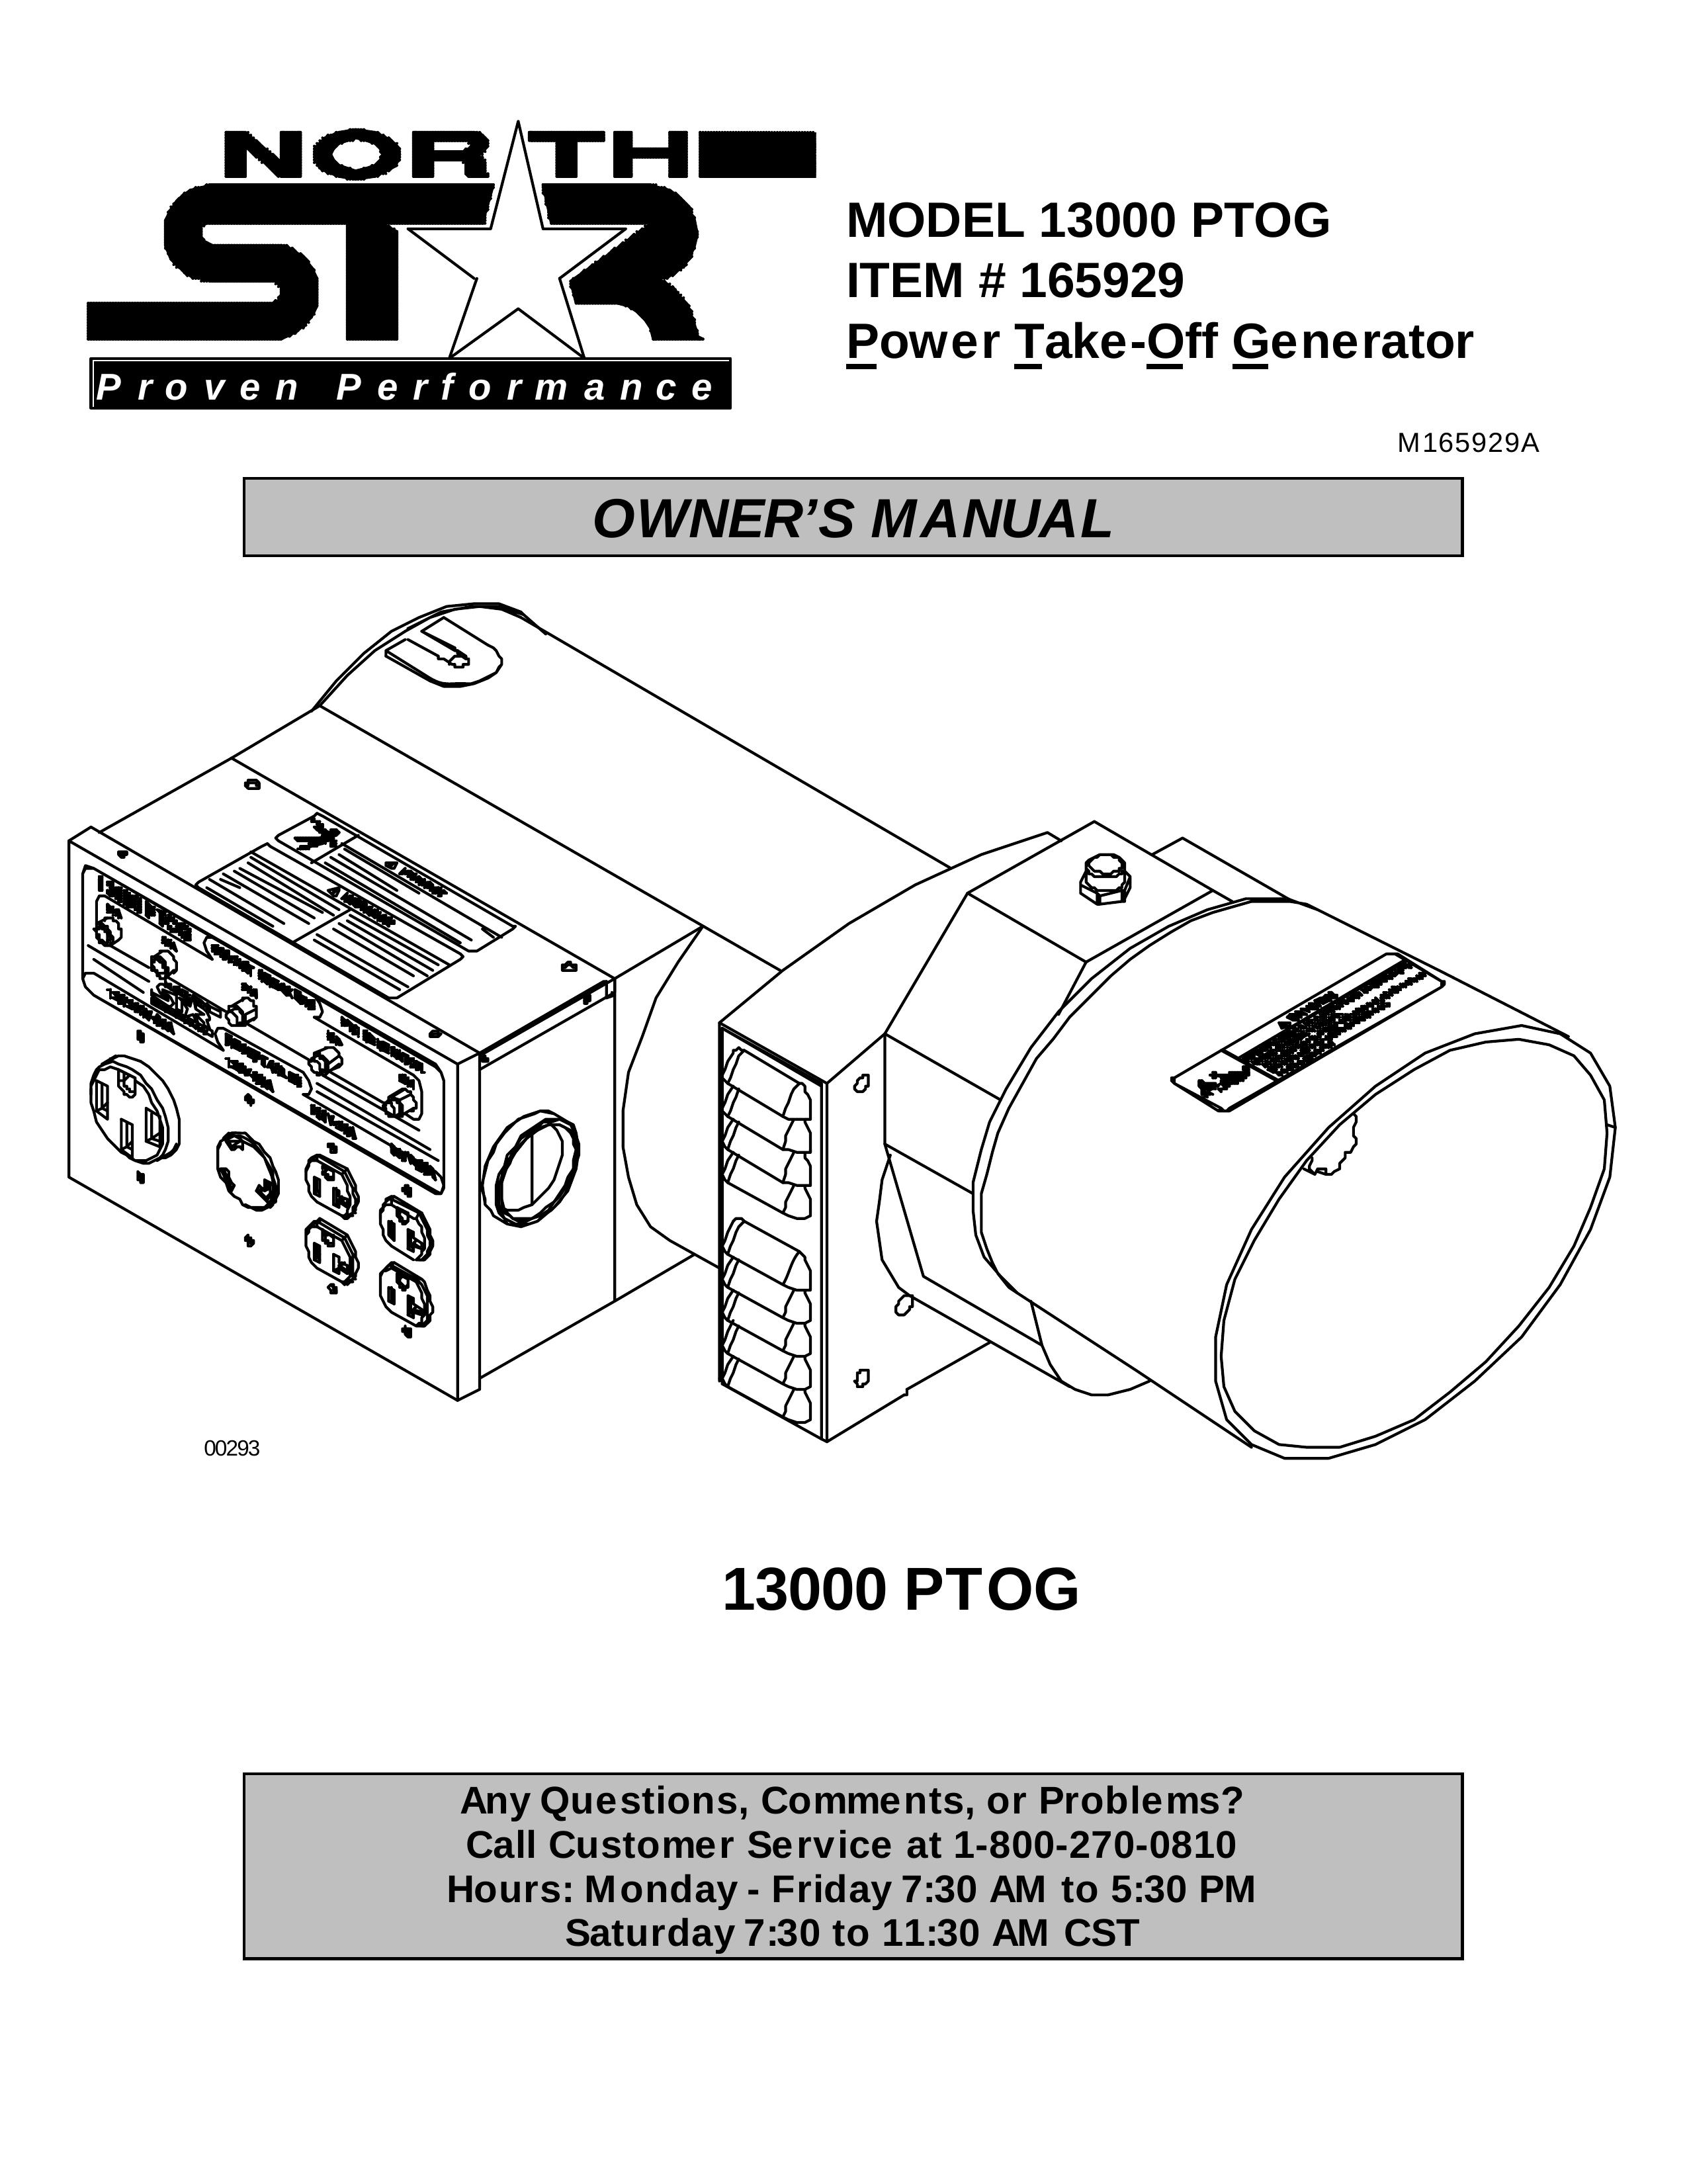 North Star 13000 PTOG Portable Generator User Manual